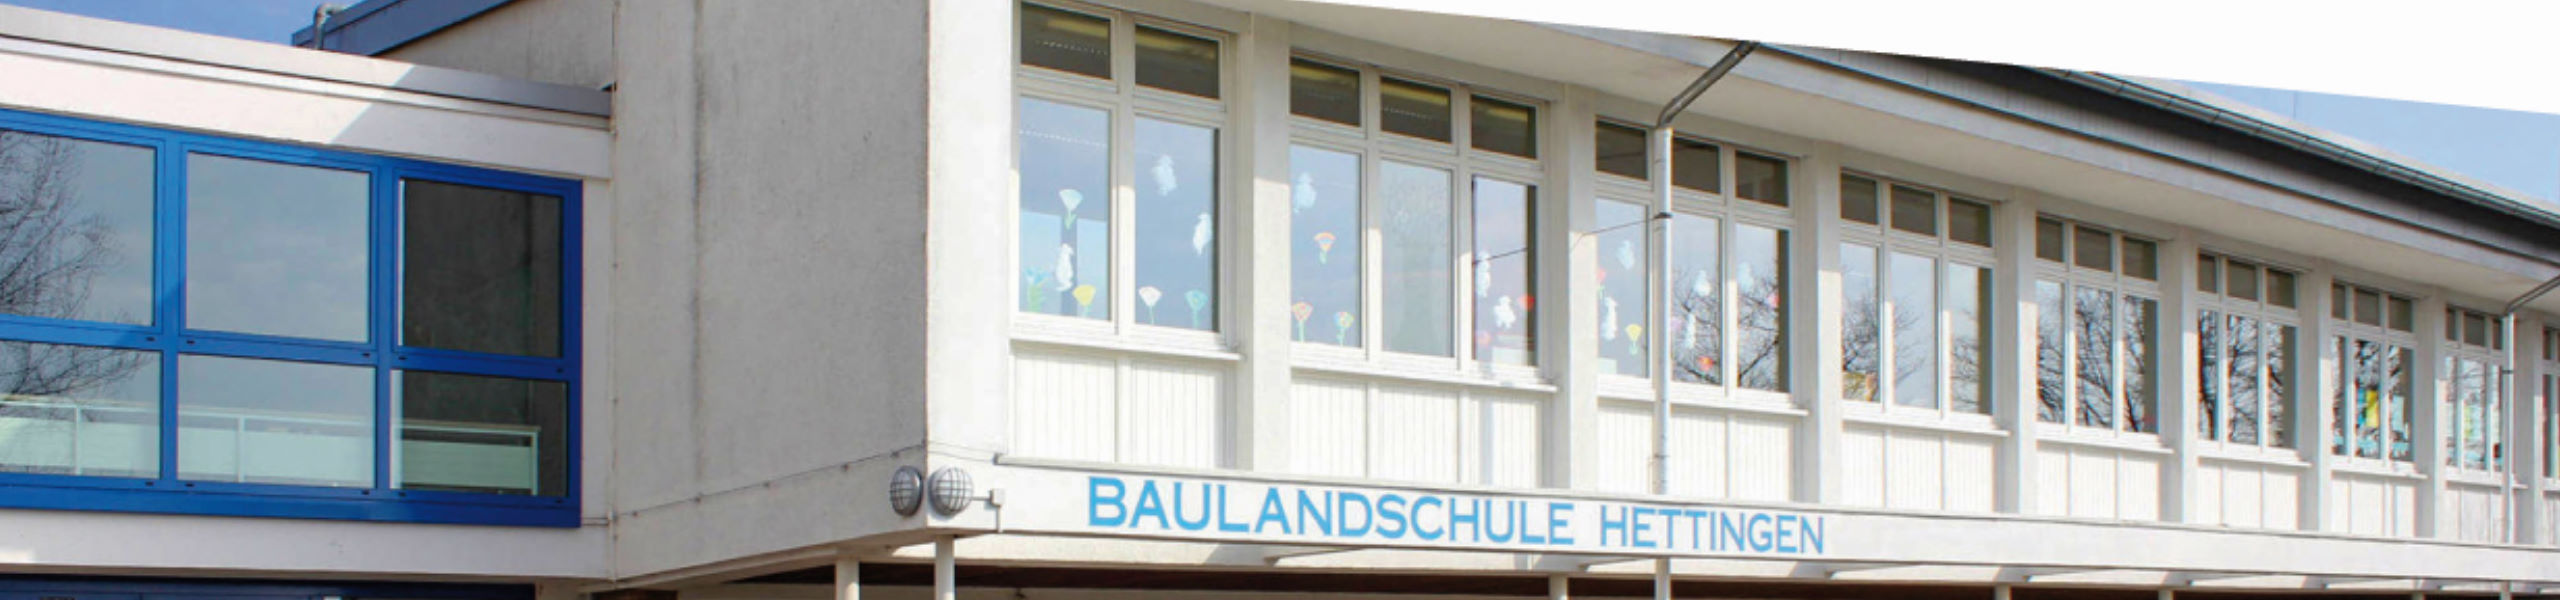 Baulandschule Hettingen - Infos zur Abschlussprüfung